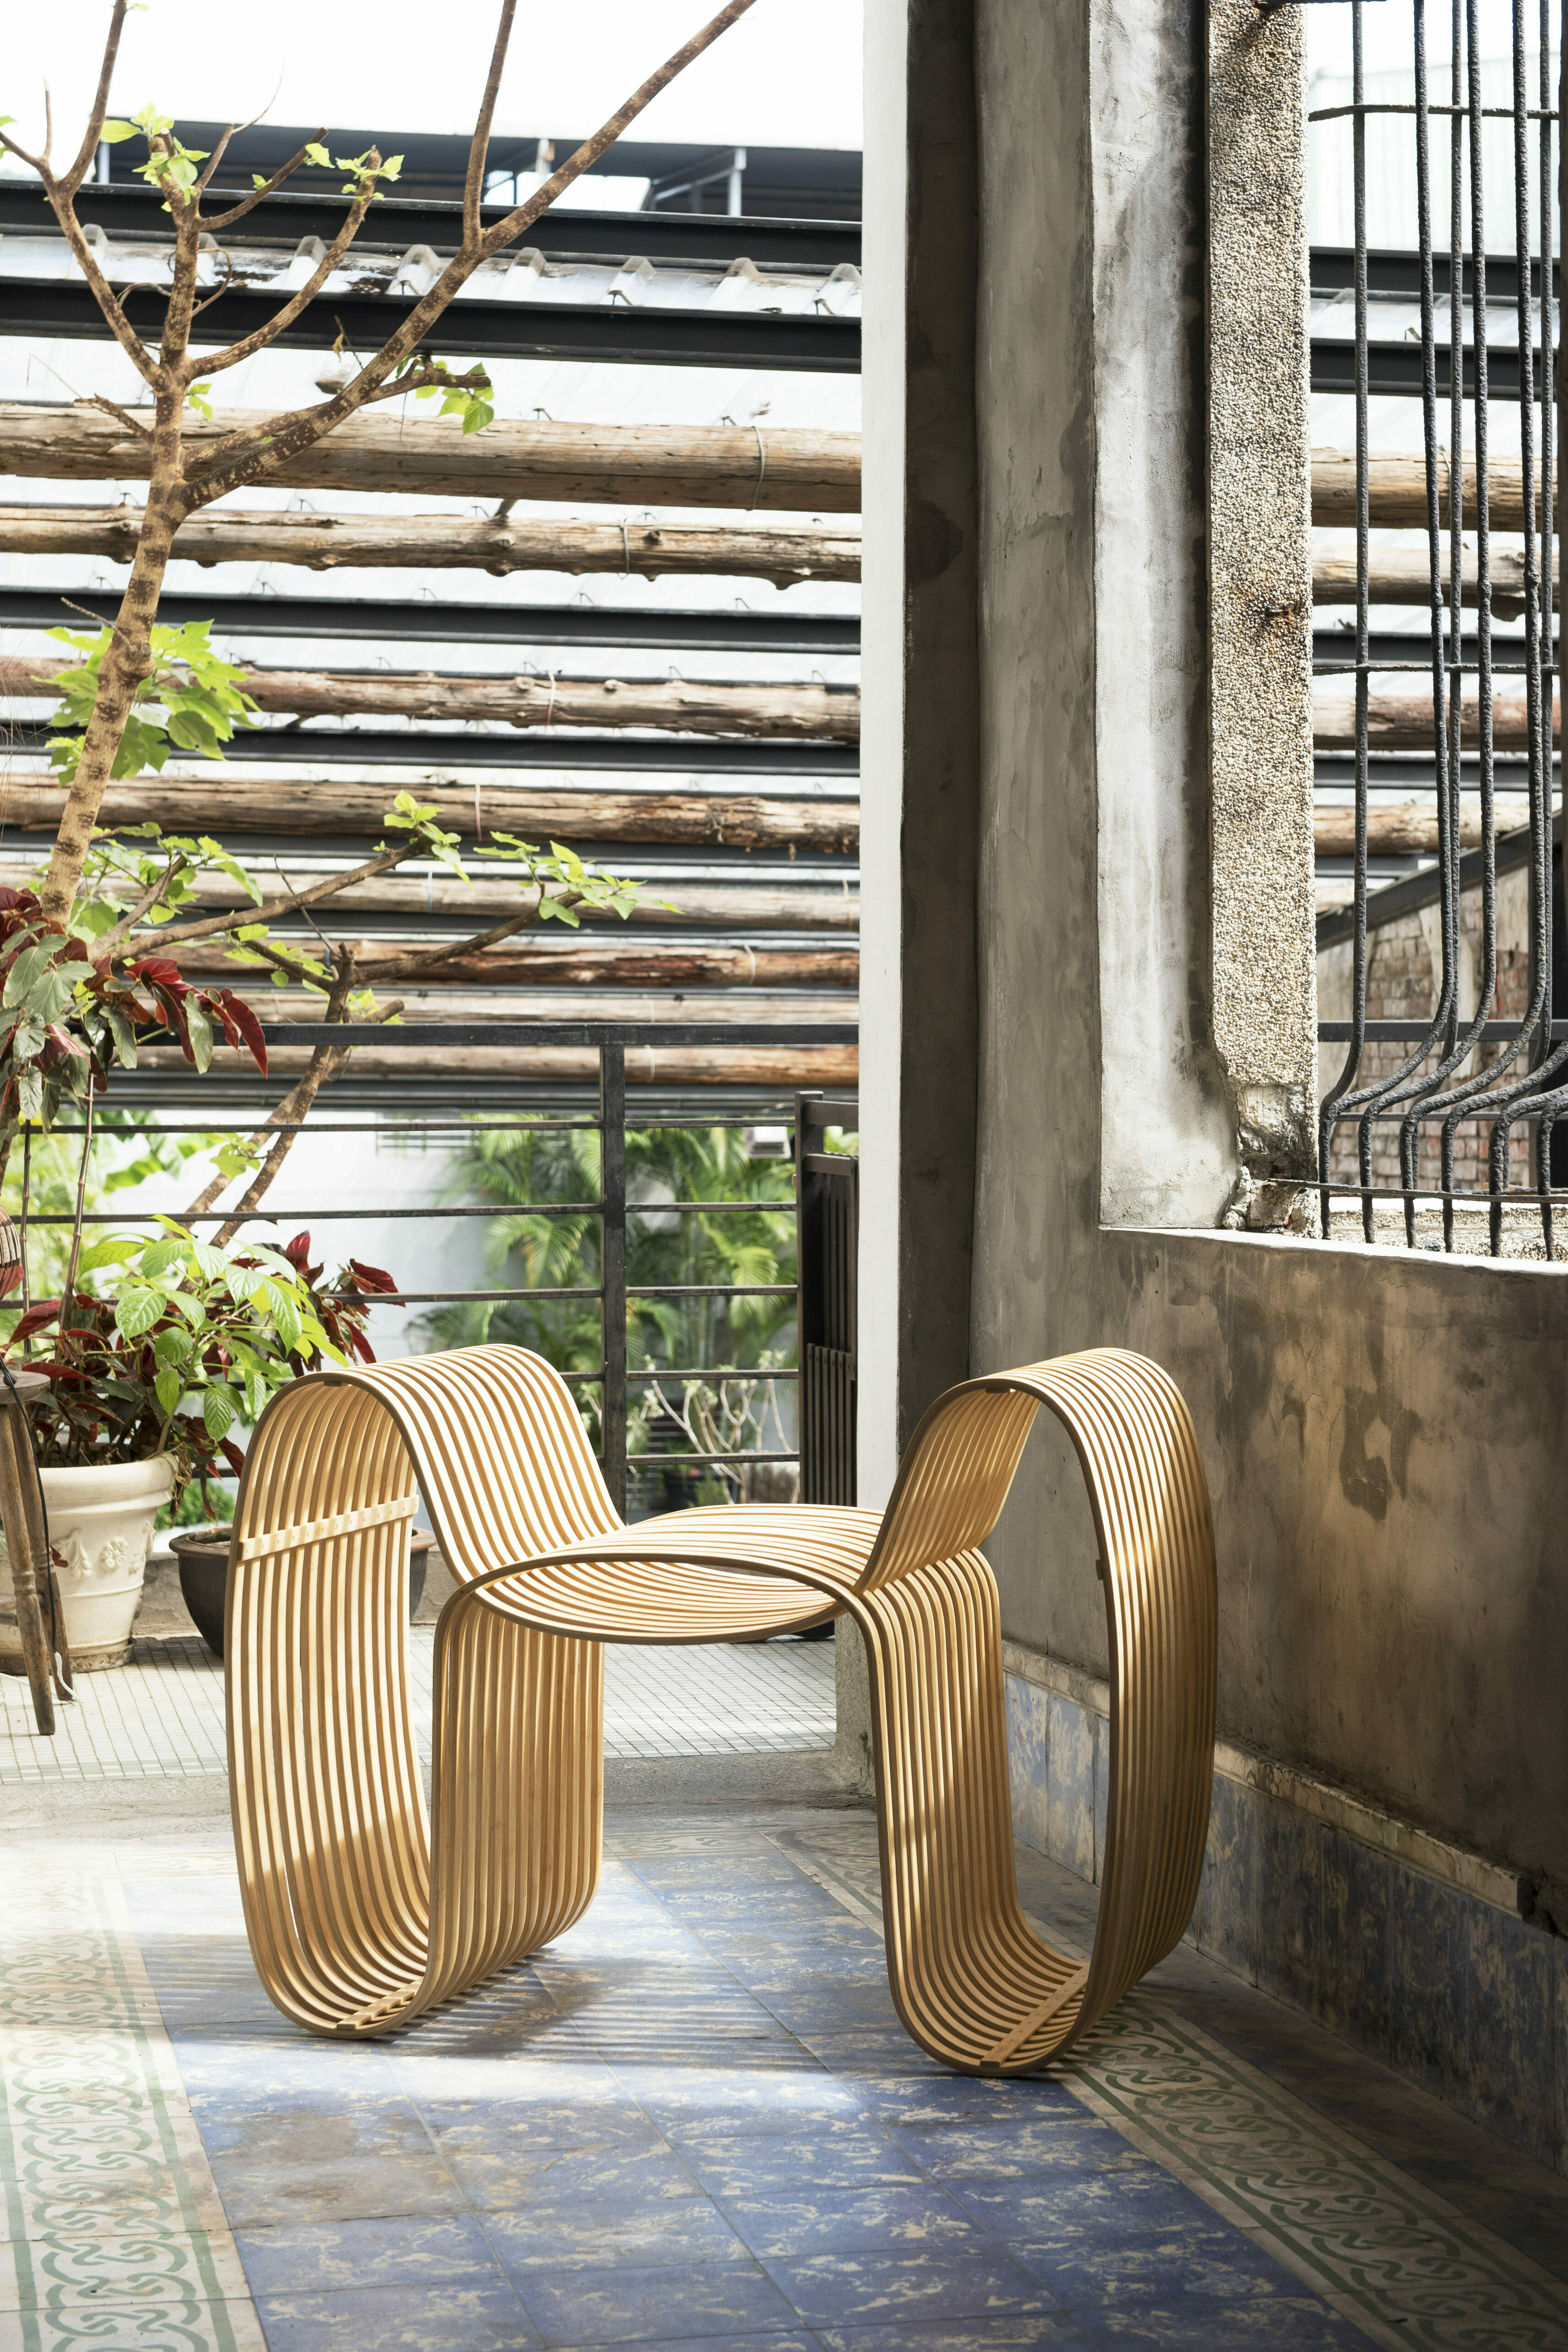 bow tie chair gridesign studio bambus stuhl hell design inneneinrichtung einrichtungsidee